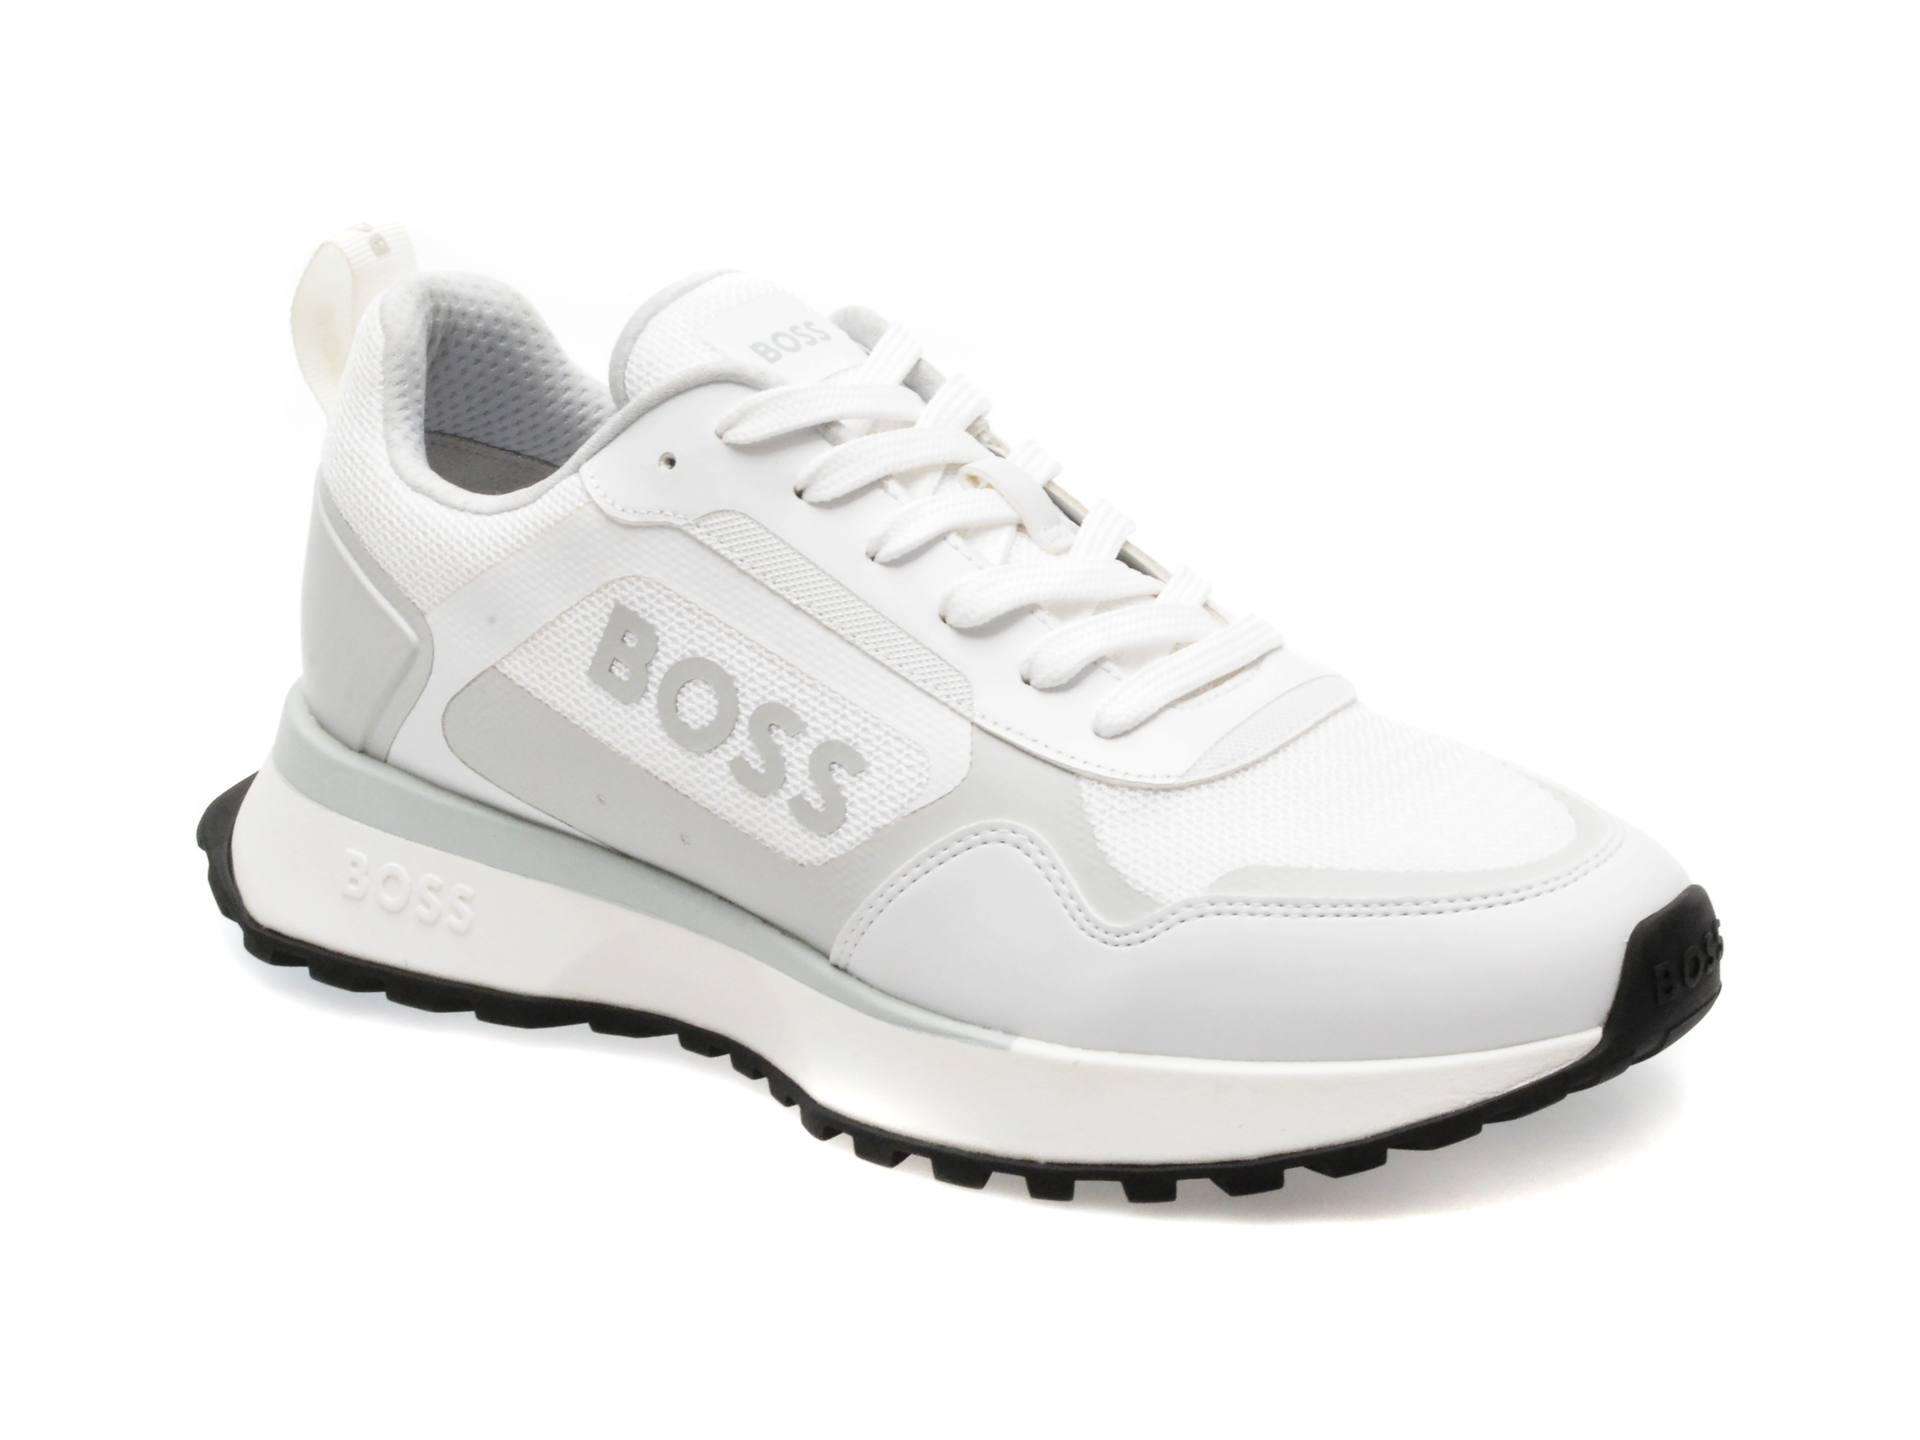 Pantofi sport BOSS albi, 7300, din piele ecologica